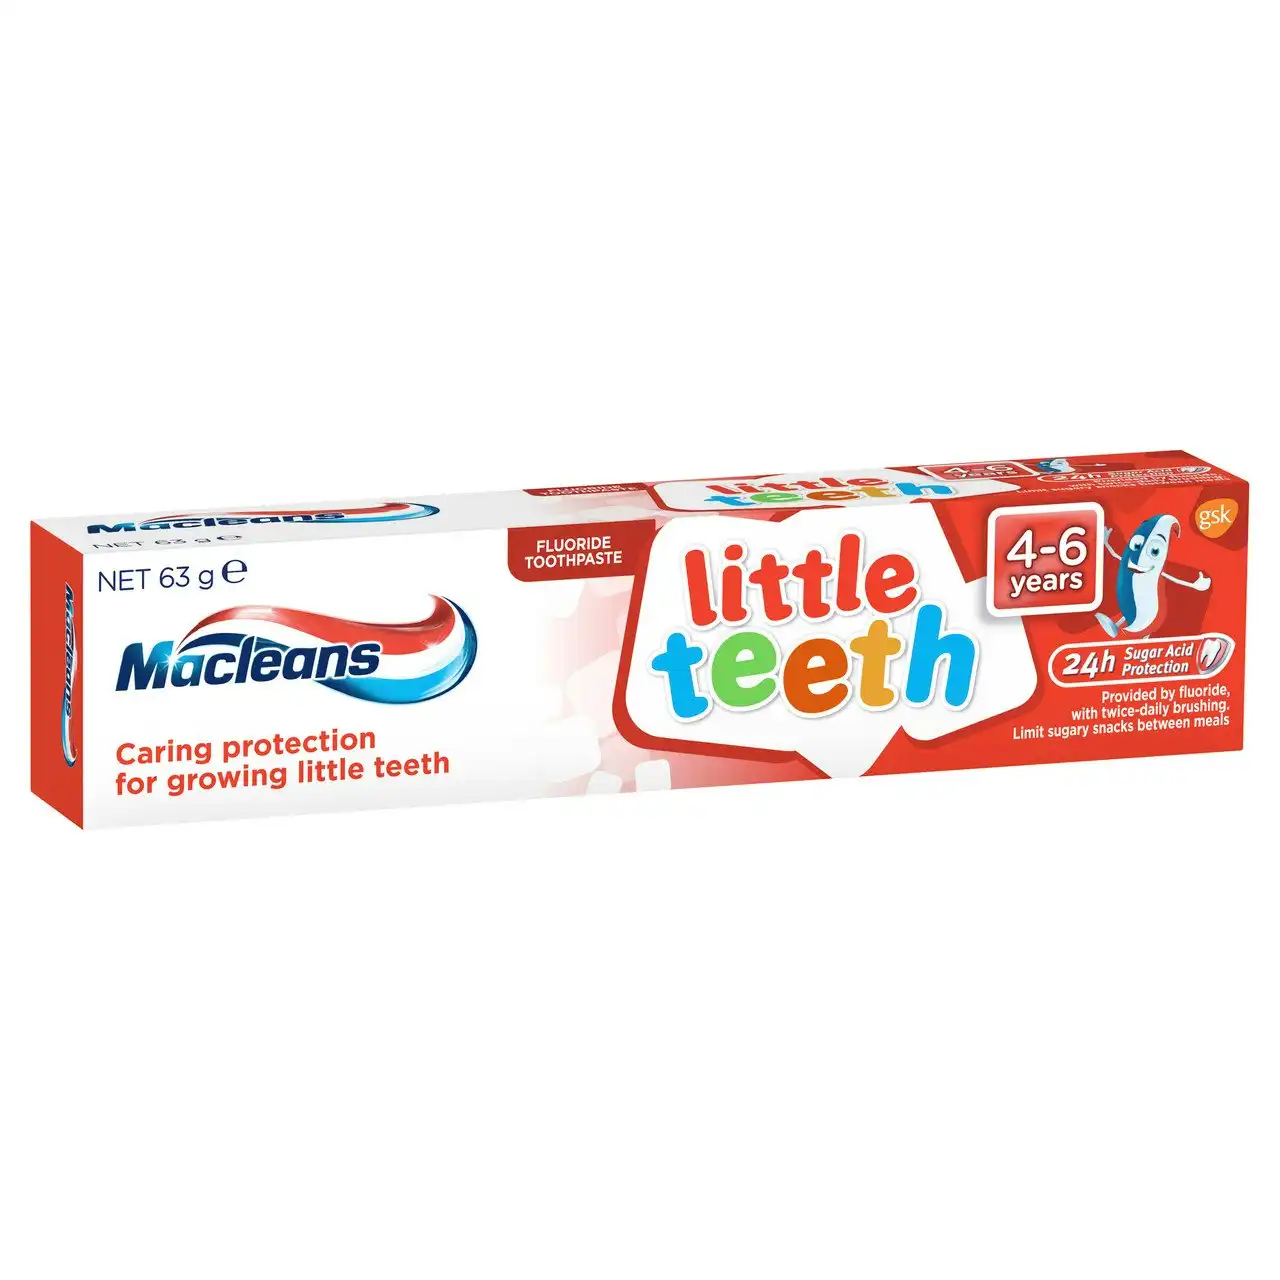 Macleans Little Teeth Kids Toothpaste 4-6 Years 63g - 12 Pack